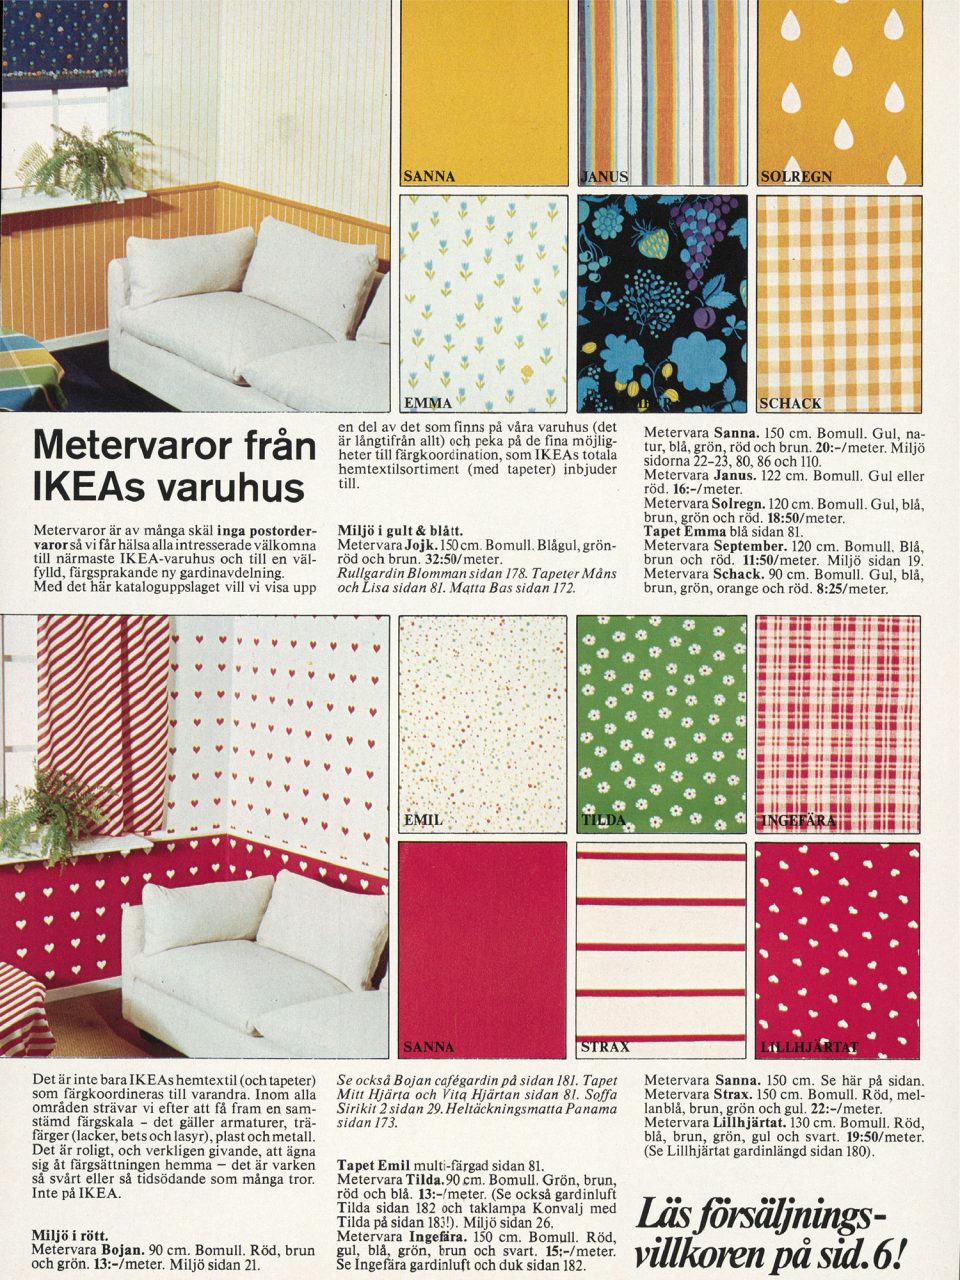 Sida i IKEA katalogen 1976 visar många olika, färgstarka och mönstrade metervaror.